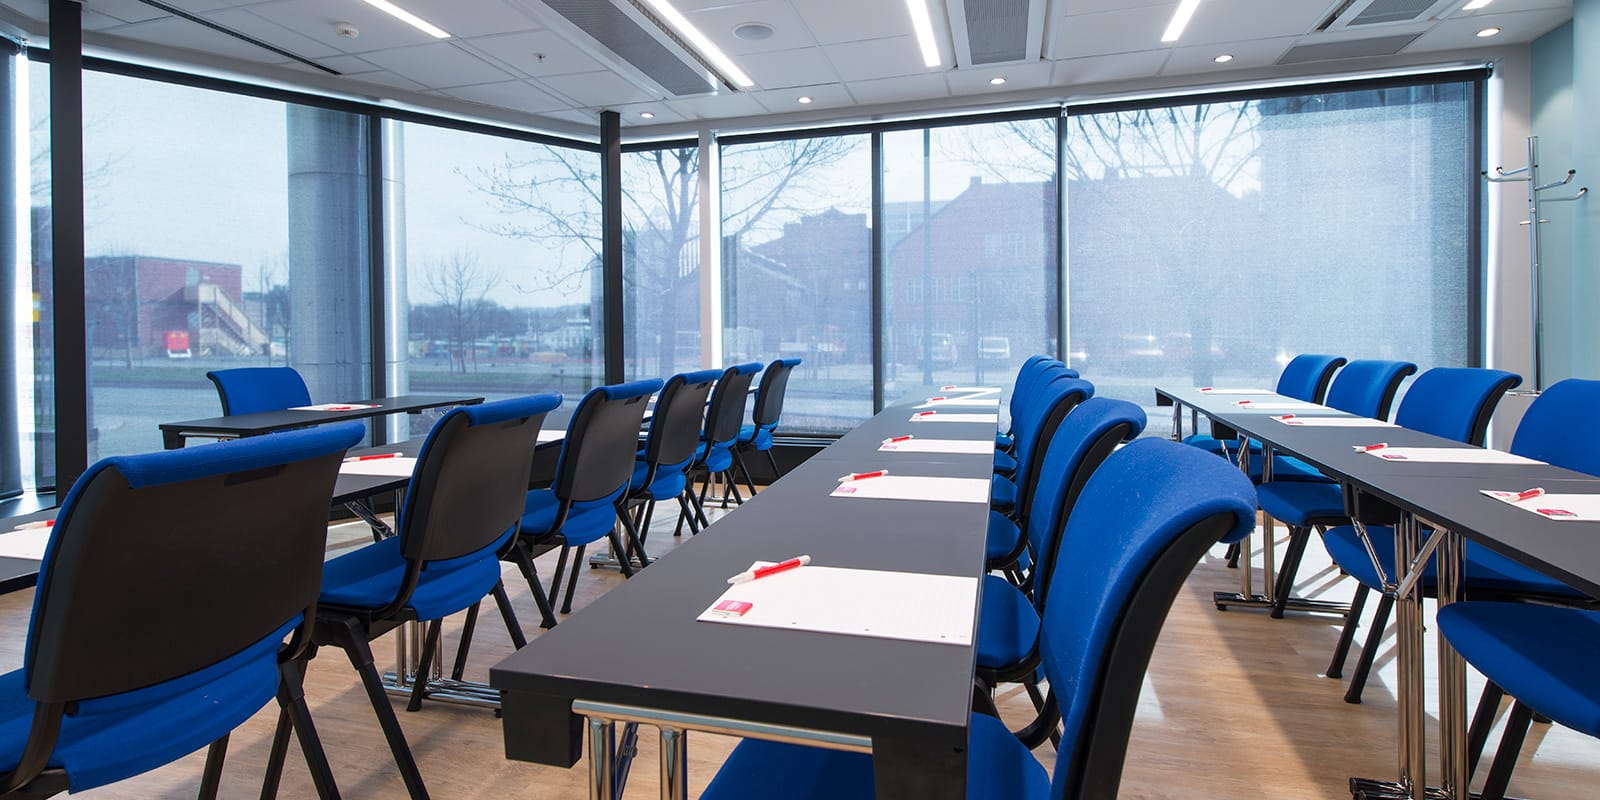 konferensrum midstuen, detaljbild av stolar och bord, fönster som släpper in ljus i rummet